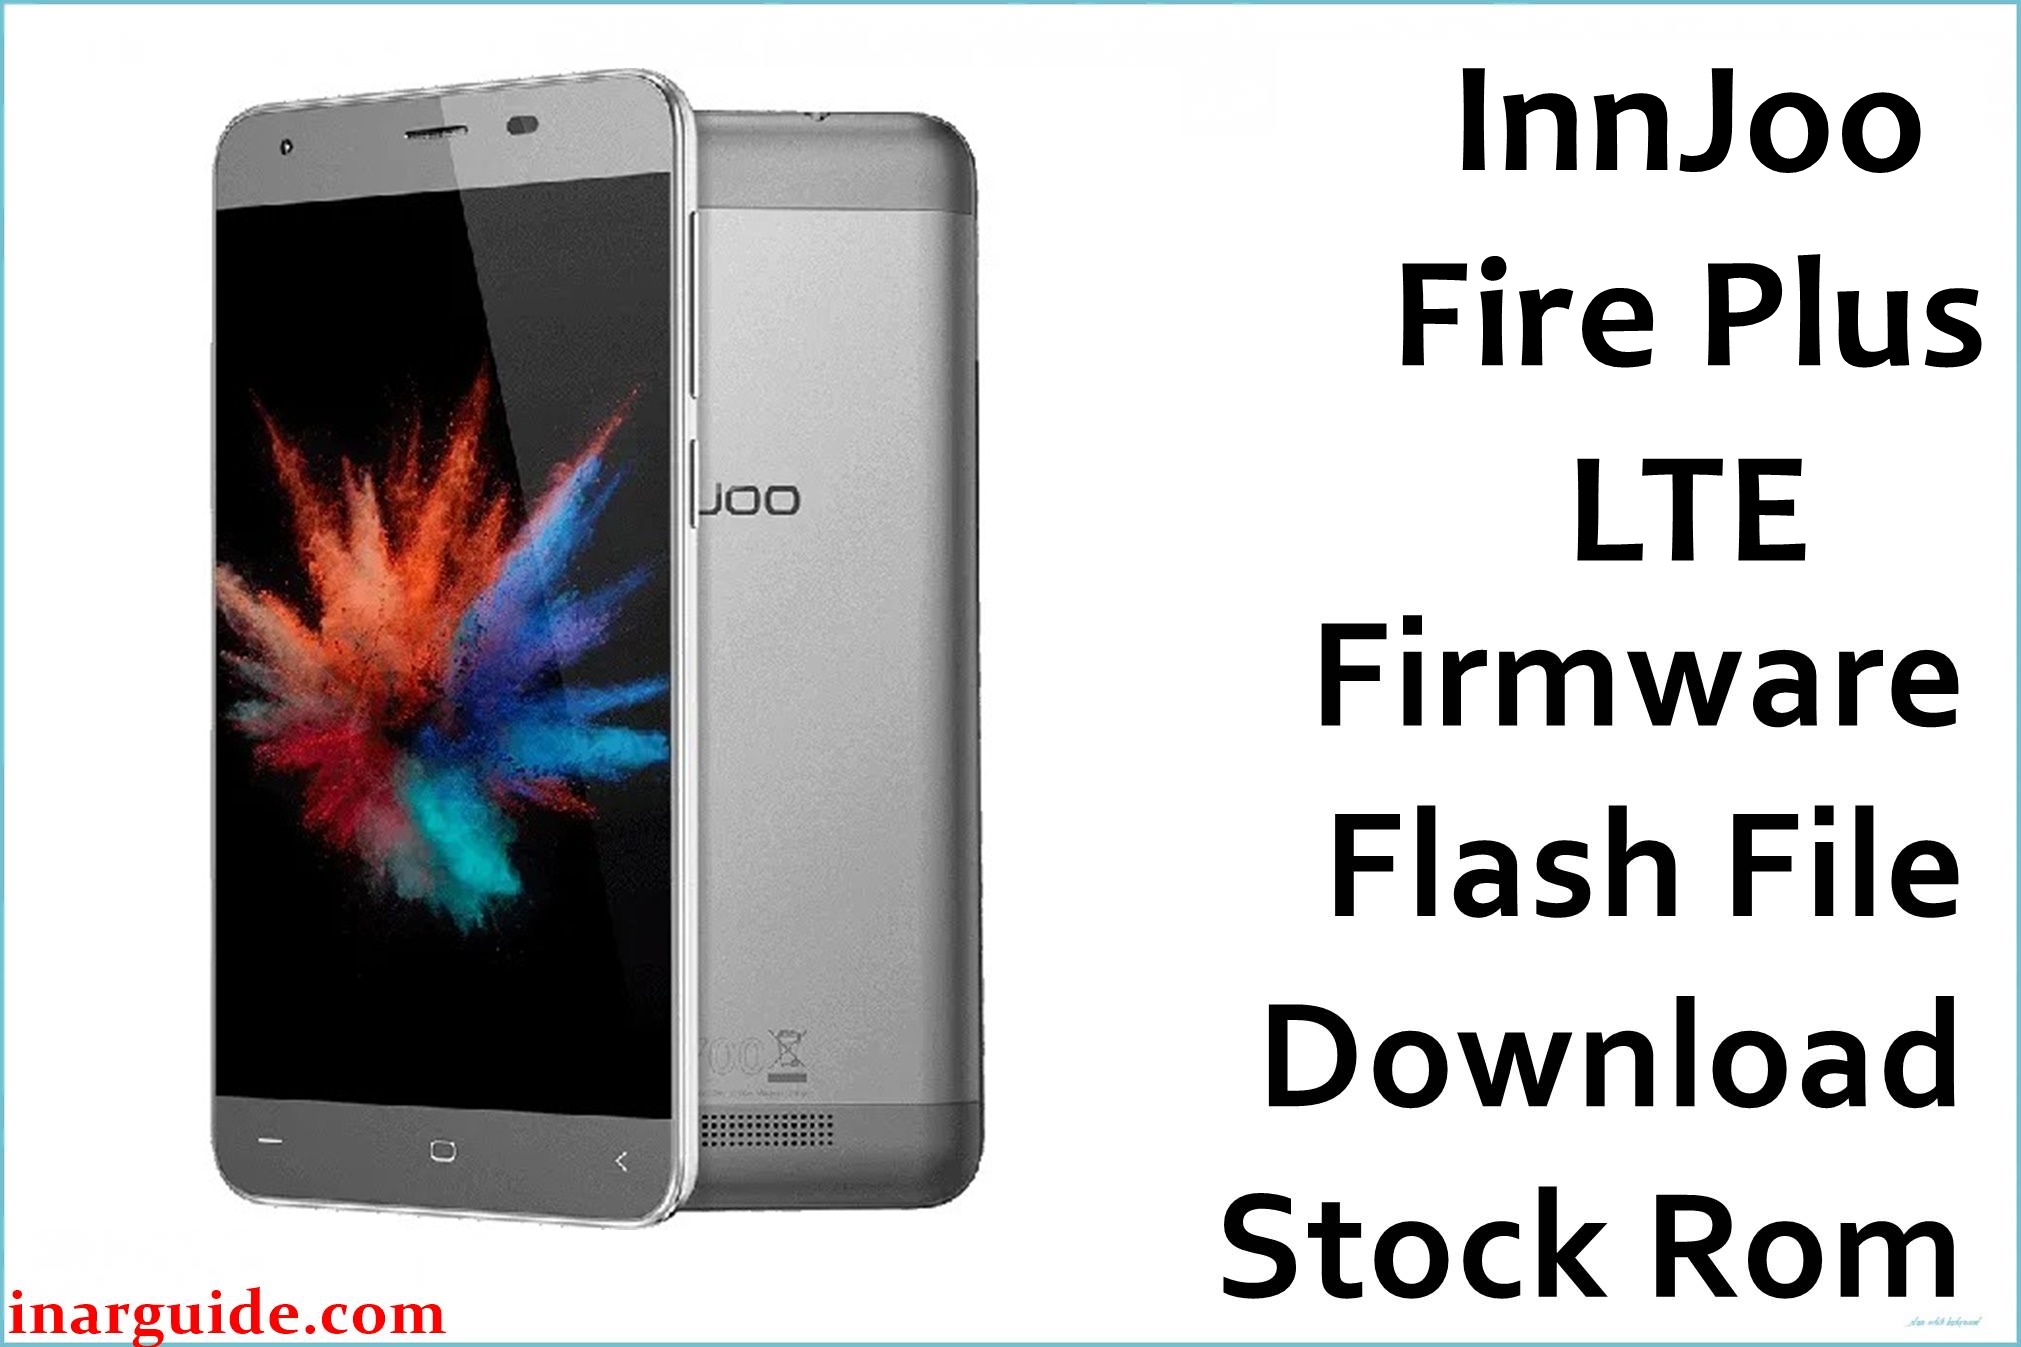 InnJoo Fire Plus LTE